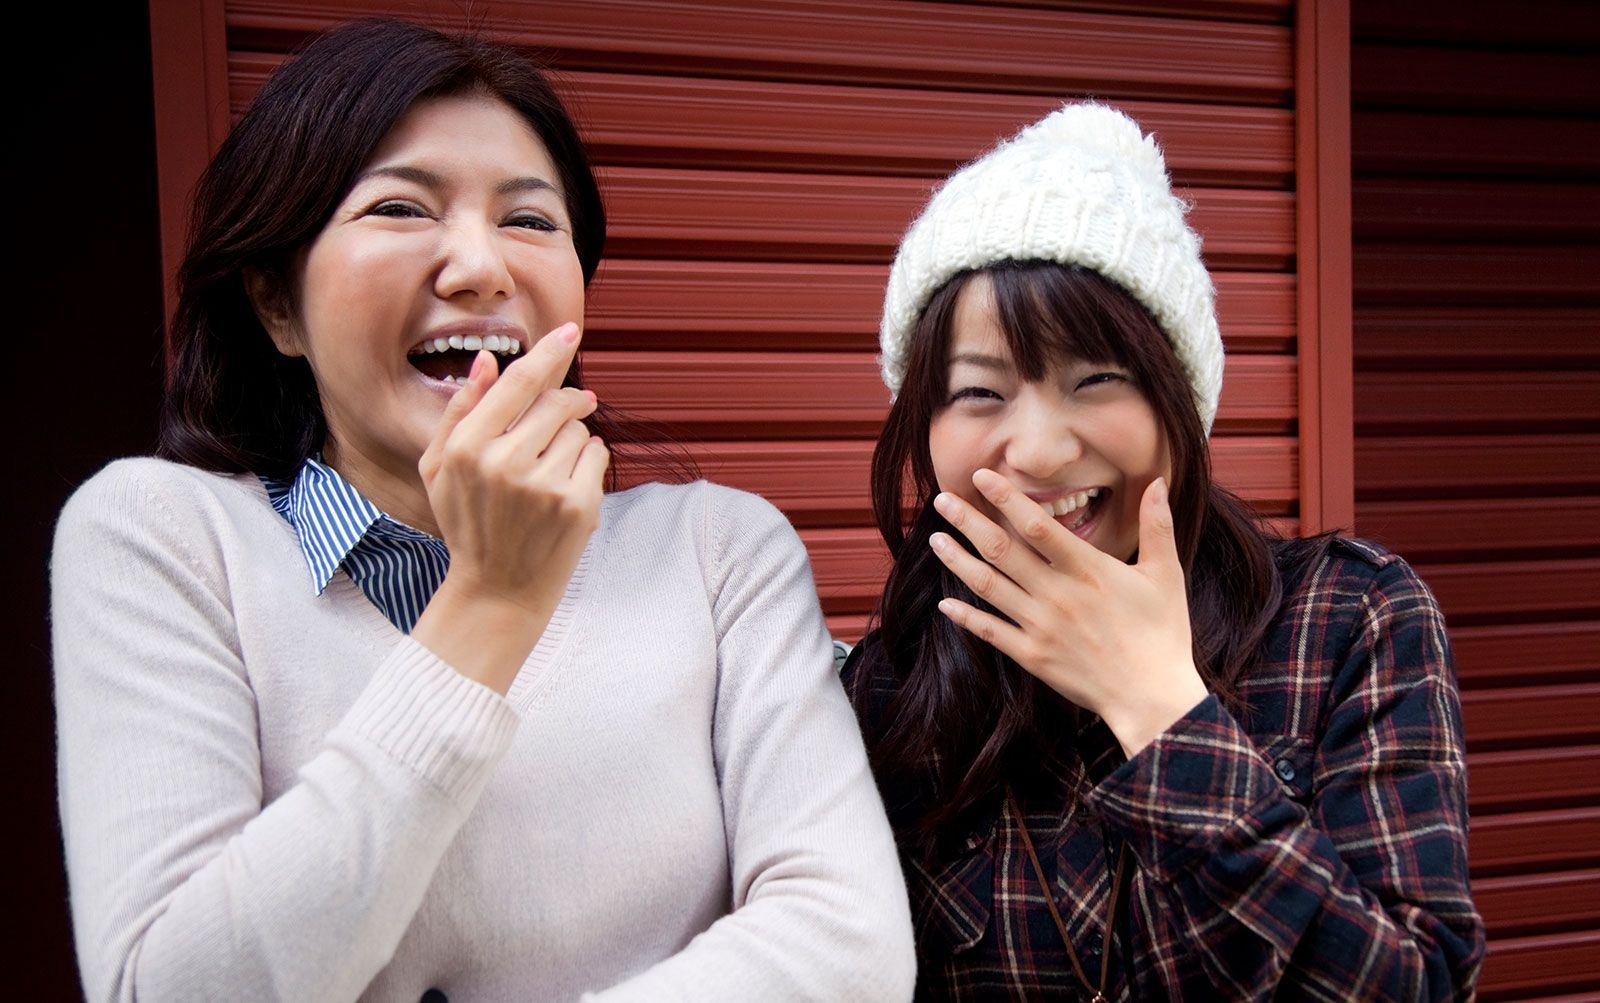 Asian girls laughing